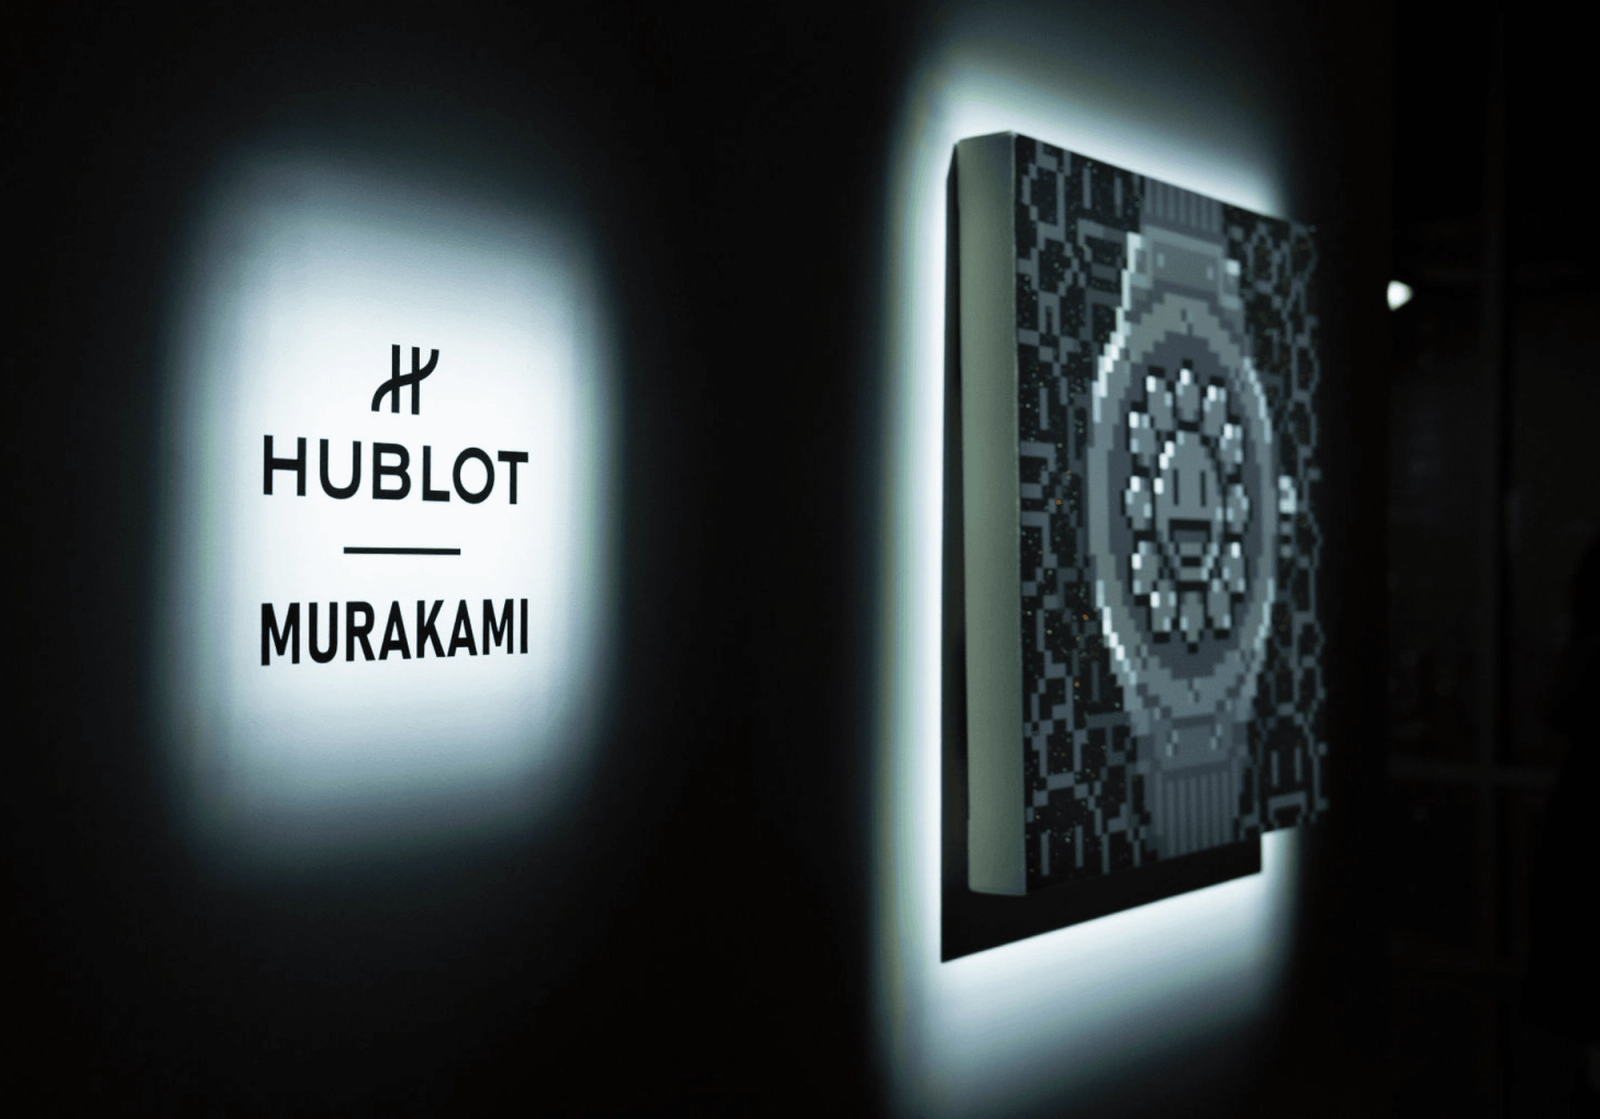 HUBLOT X MURAKAMI LAUNCH EVENT